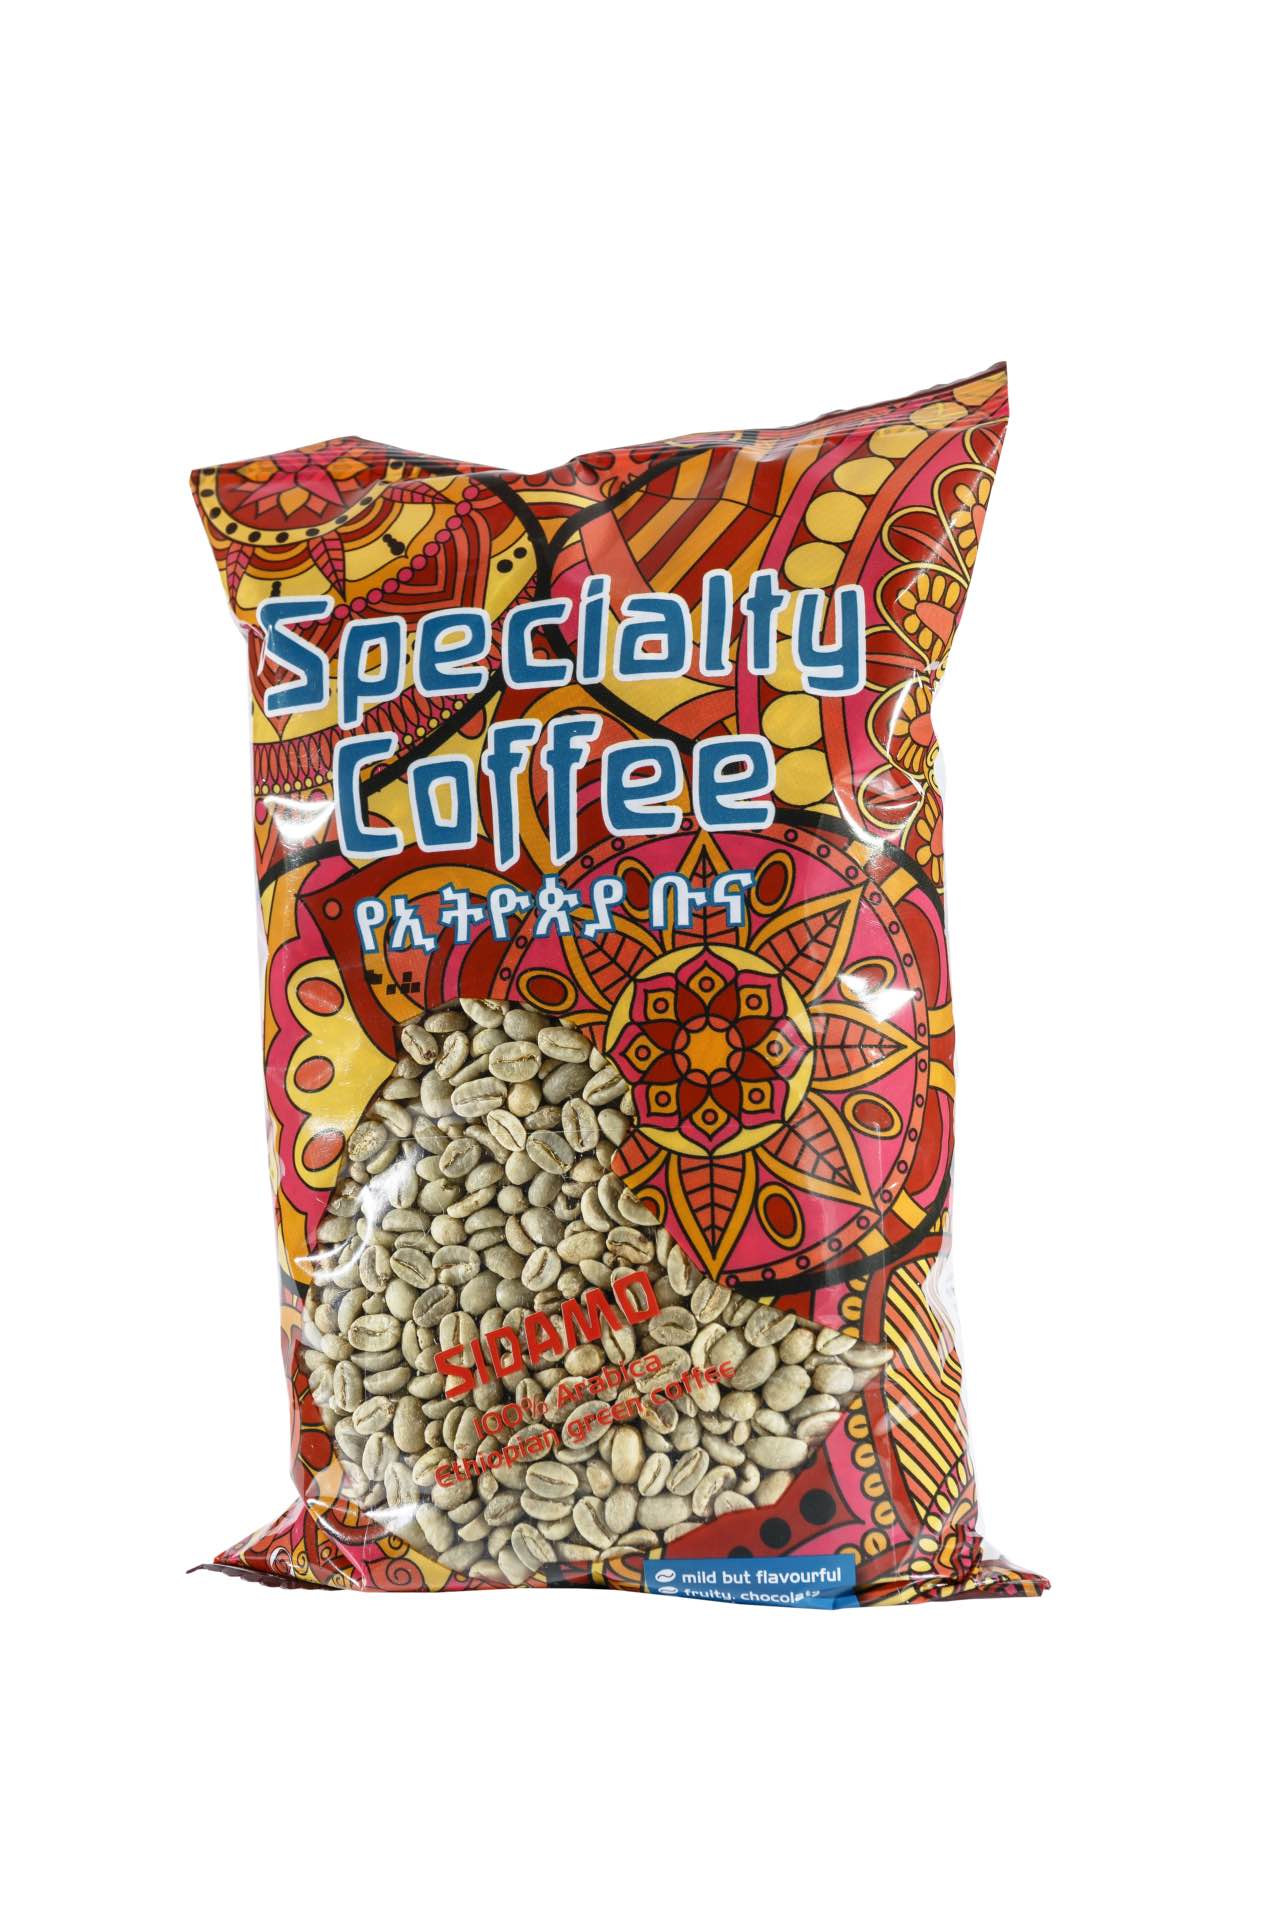 Äthipischer Kaffee – ethiopian coffee – café ethiopien – 1kg